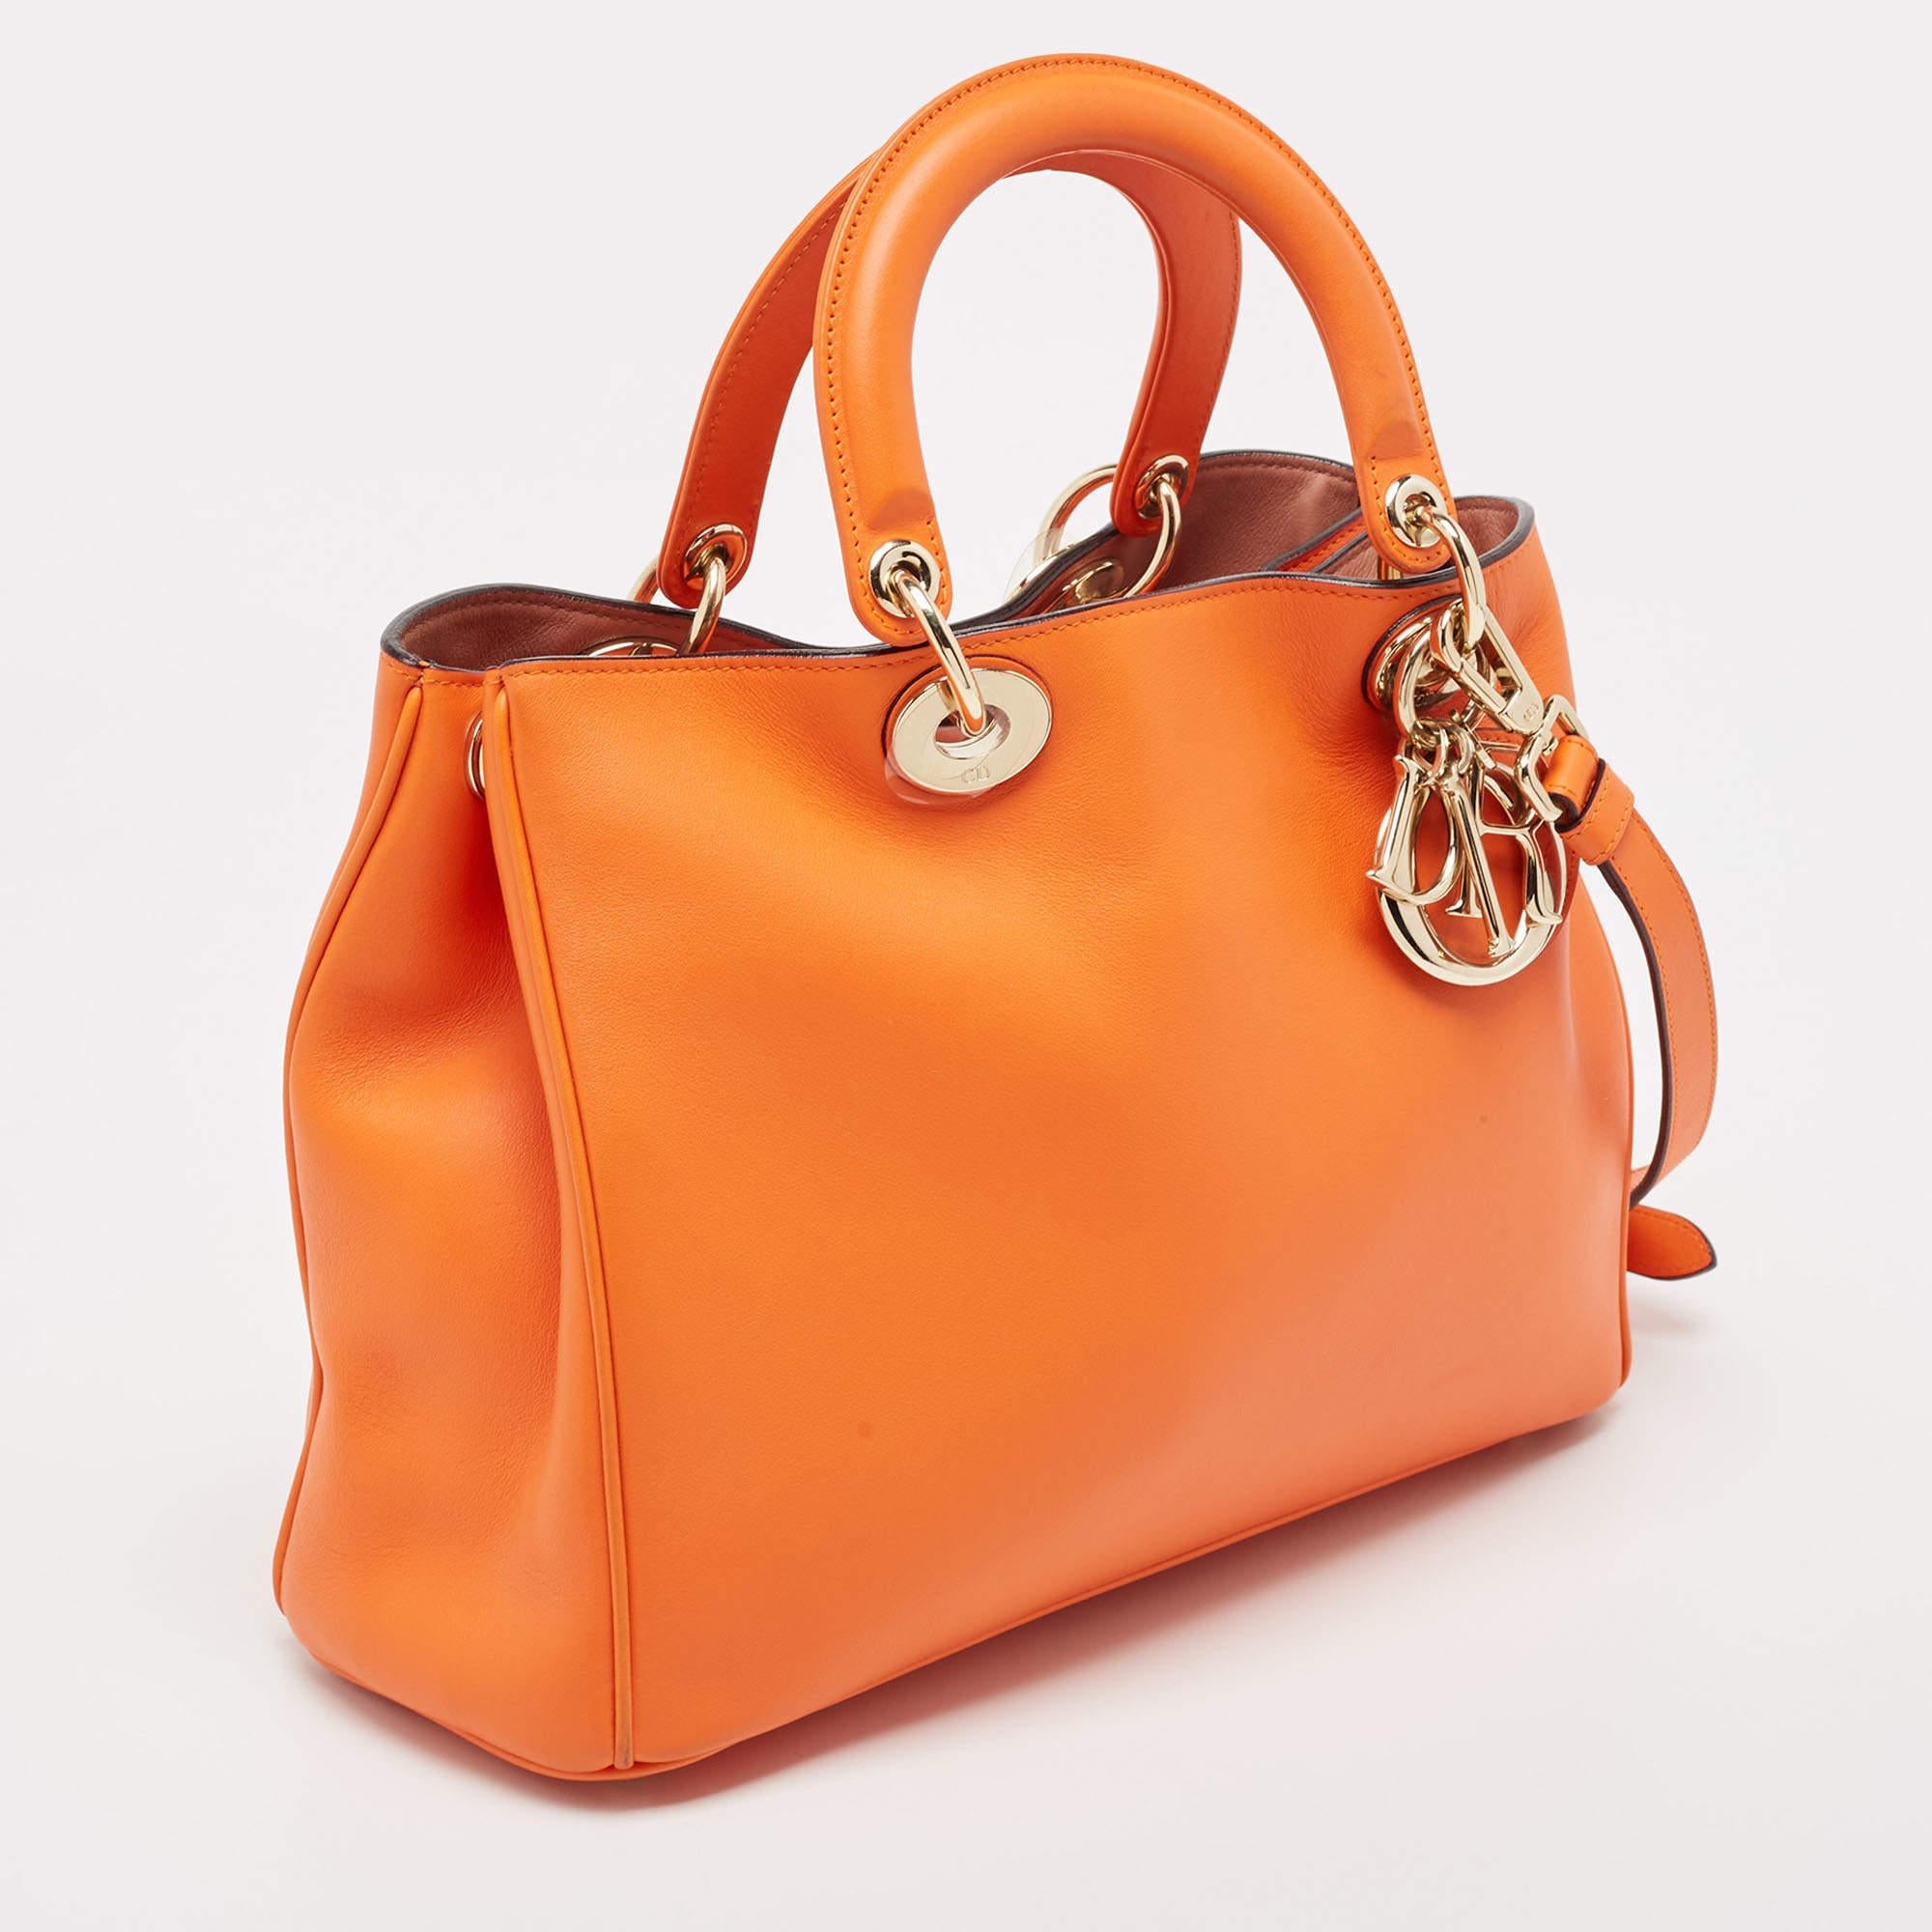 Dior Orange Leather Medium Diorissimo Shopper Tote In Good Condition For Sale In Dubai, Al Qouz 2